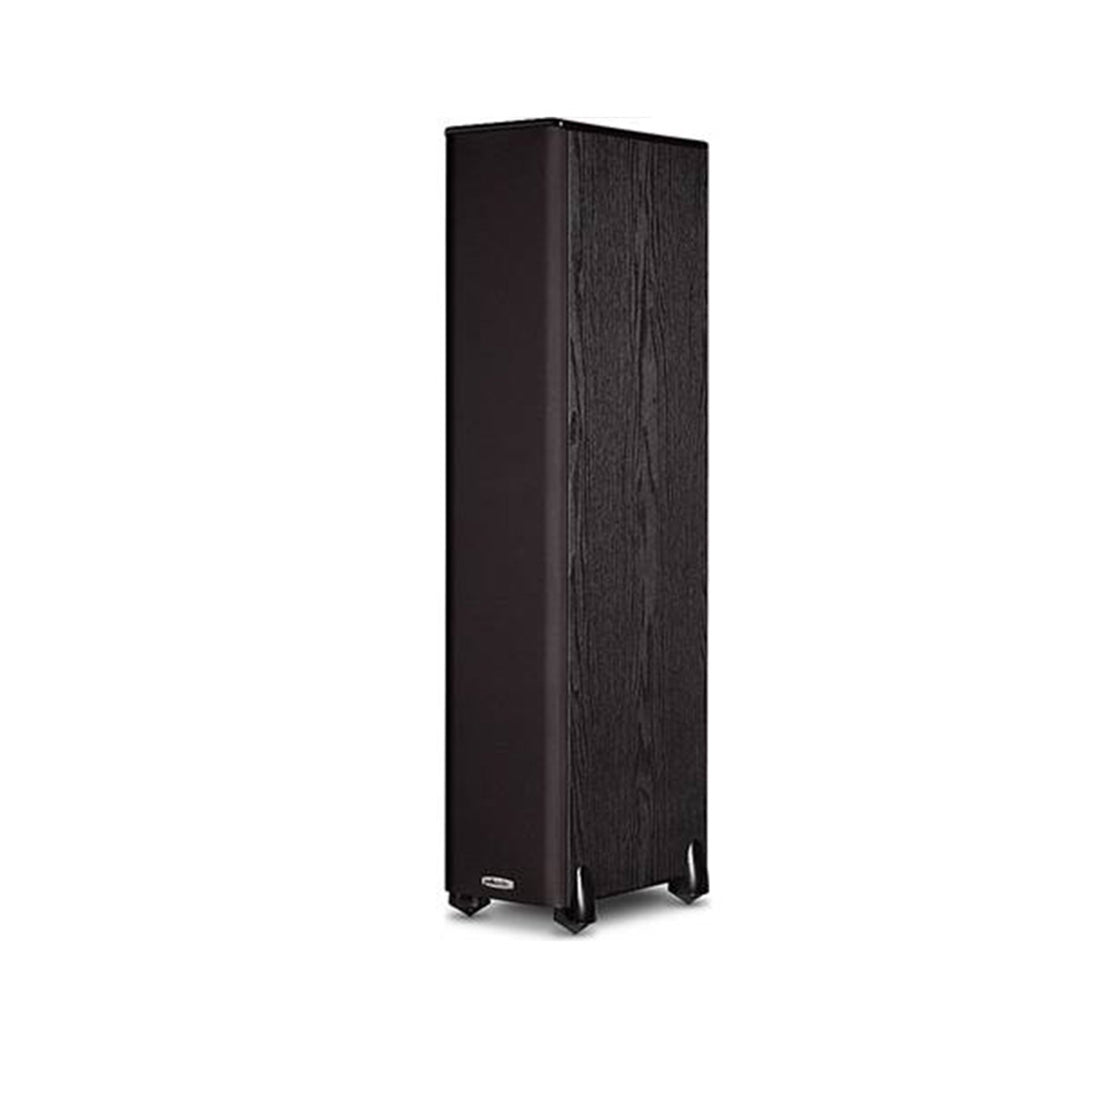 Polk Audio TSi300 3-Way Floor-Standing Speakers - Pair - Black